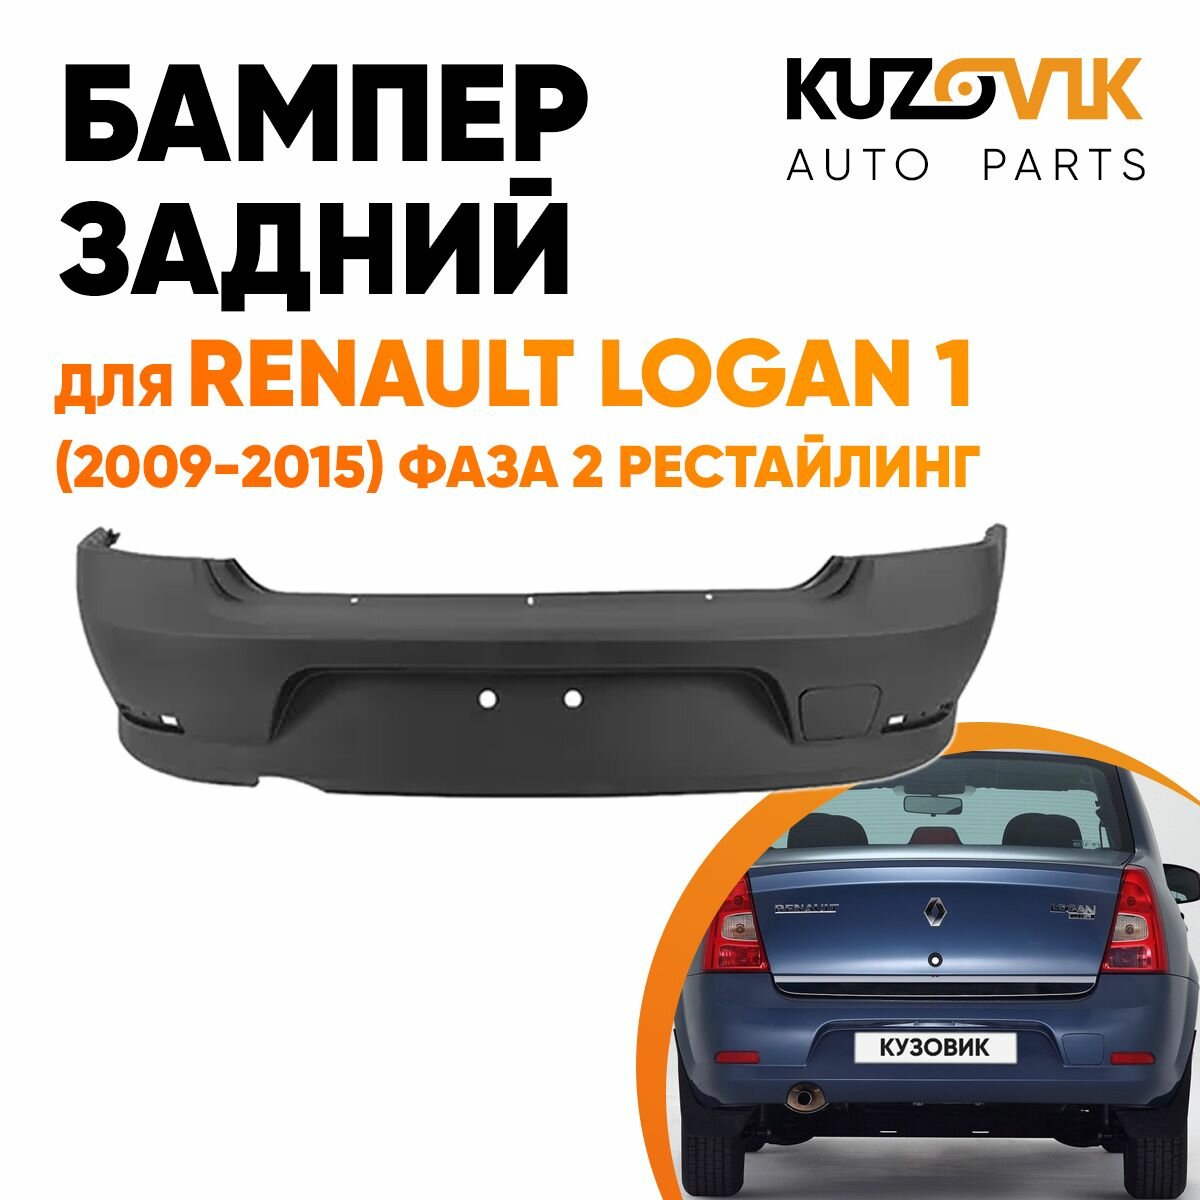 Бампер задний в цвет кузова Renault Logan 1 Рено Логан (2009-2015) фаза 2 рестайлинг D69 - GRIS PLATINE - Серебристый